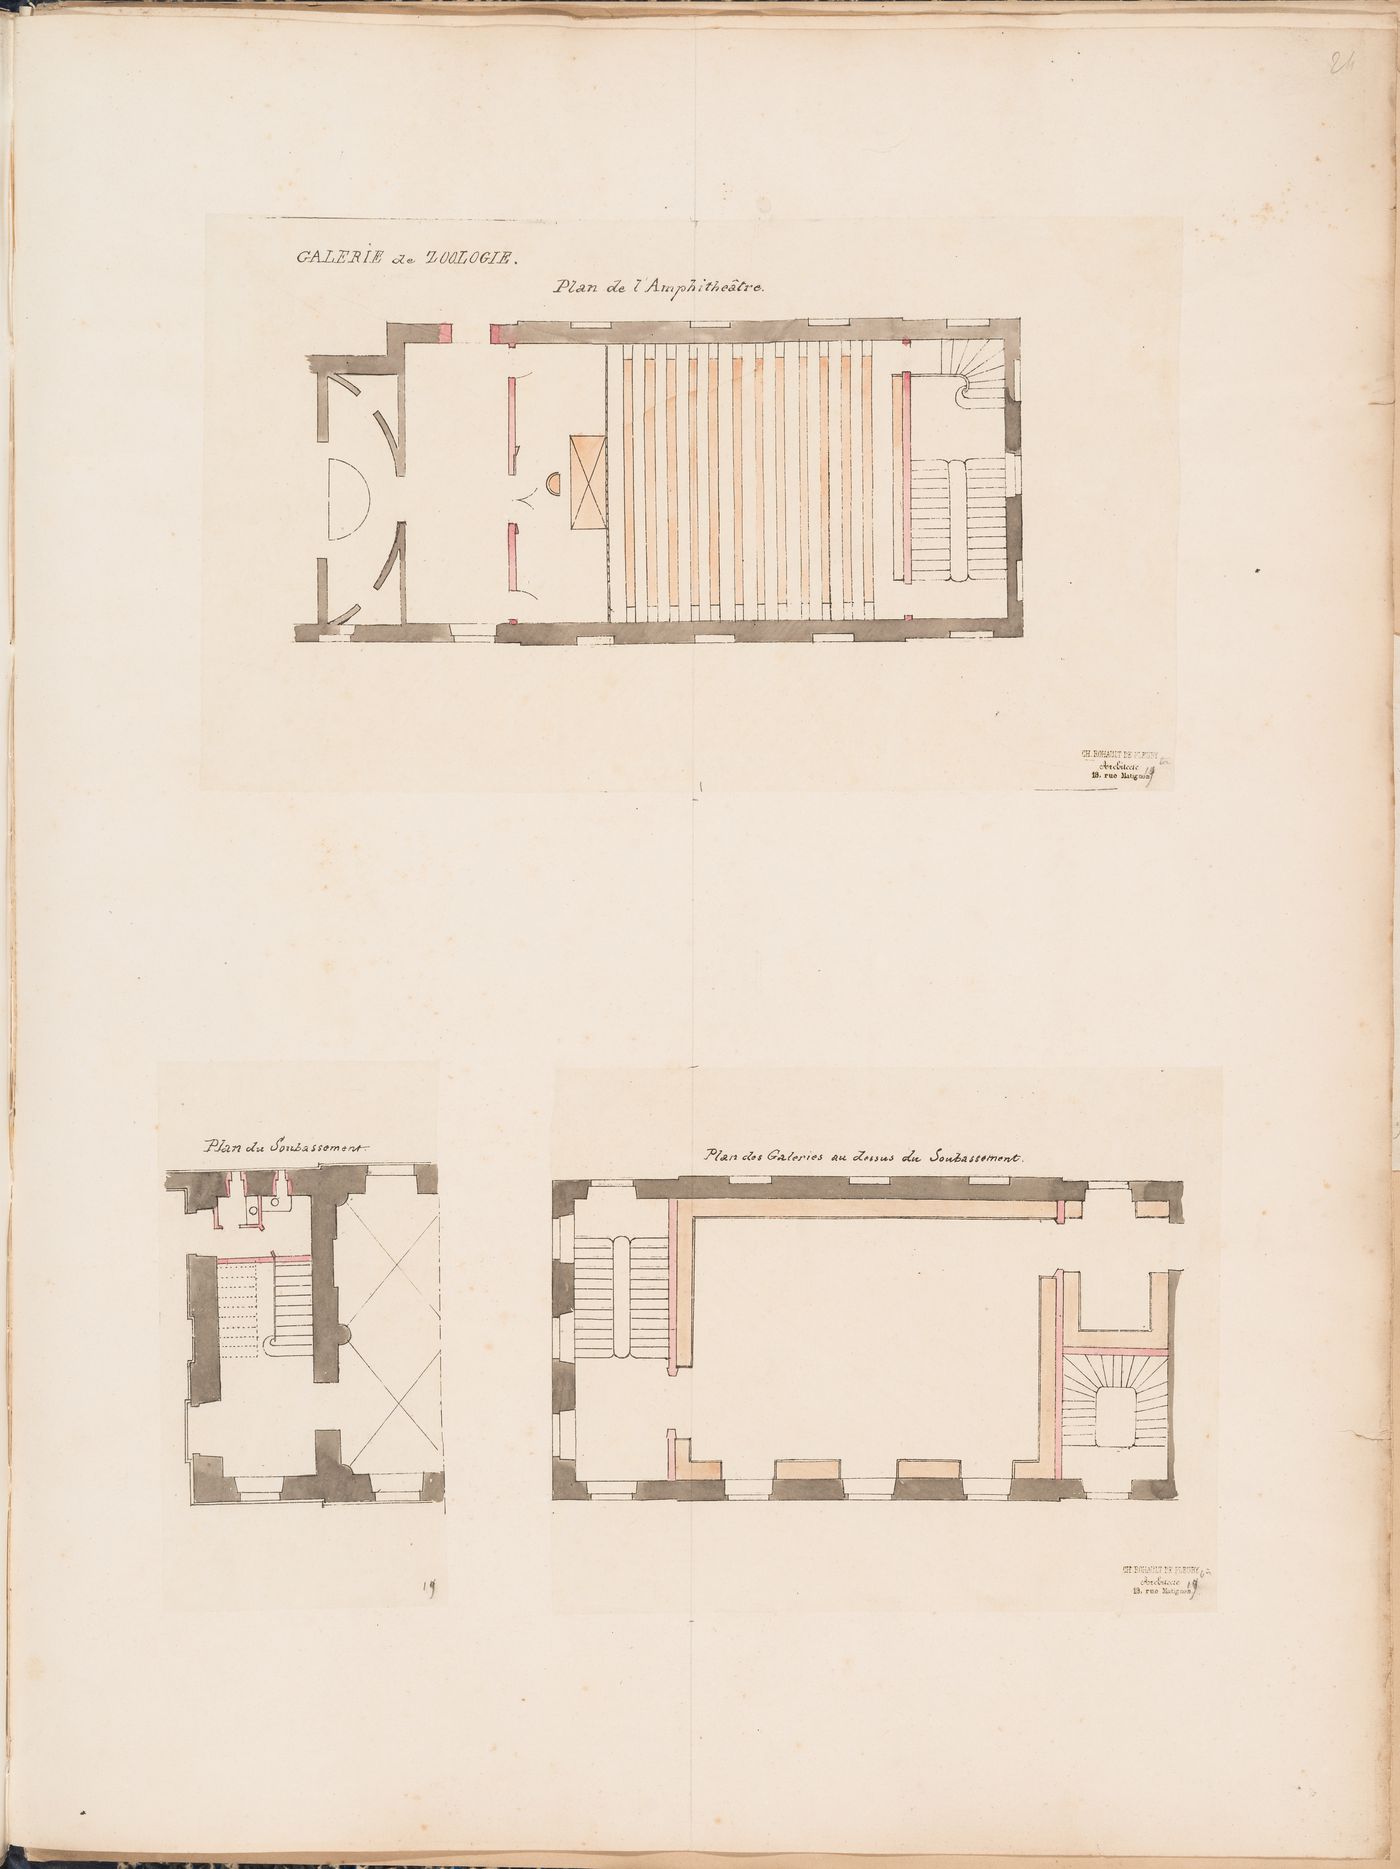 Project for a Galerie de zoologie, 1846: Plans for the amphitheatre